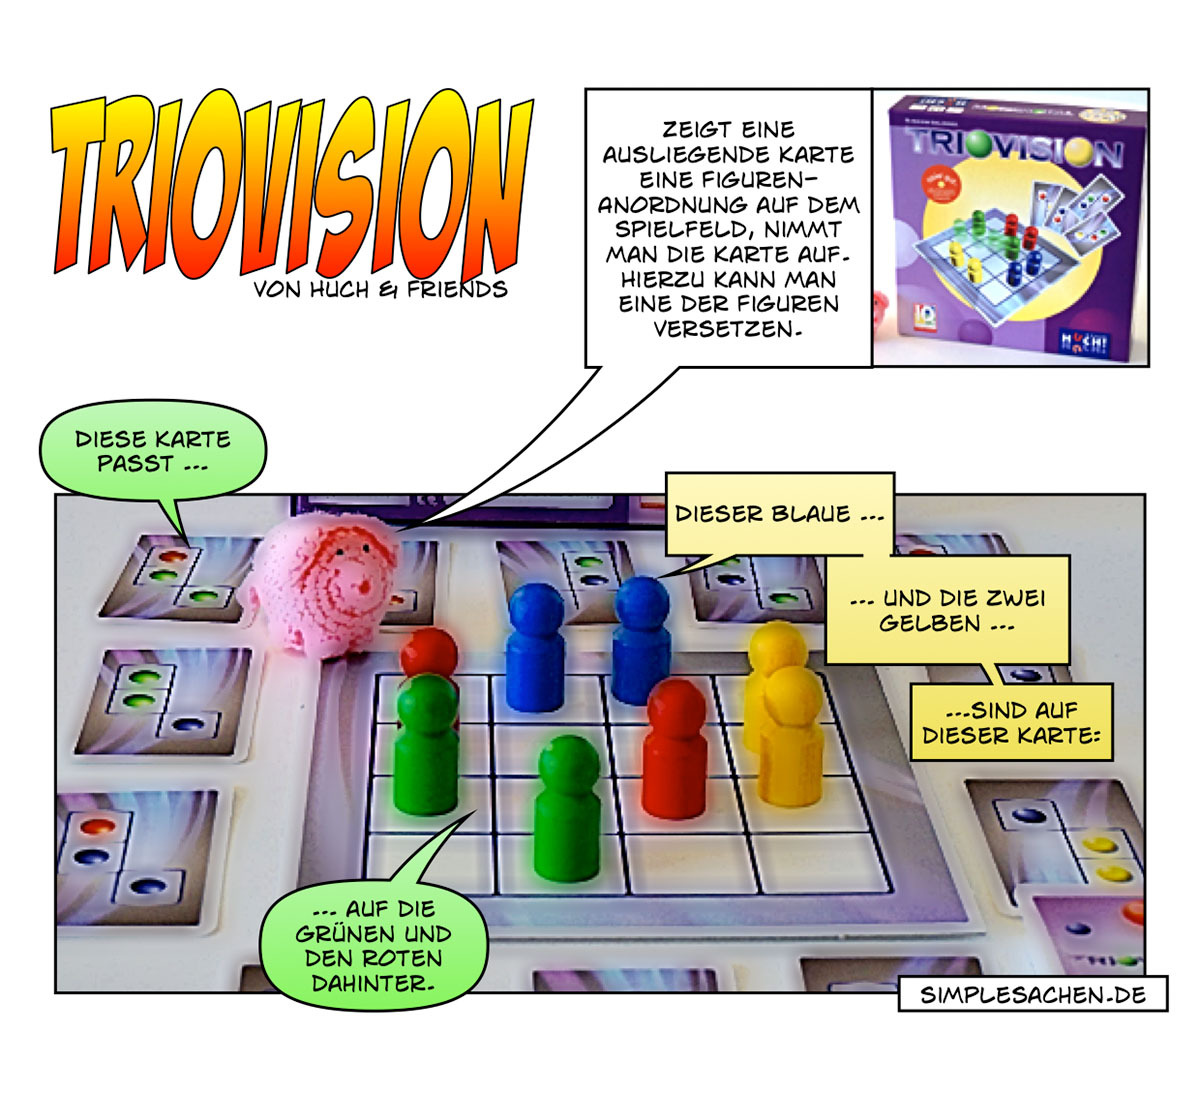 TriovisionHier sind räumliches Vorstellungsvermögen und Mustererkennung gefragt: Auf dem Spielfeld stehen farbige Figuren, drumherum liegen Karten, auf denen drei Figuren in einer bestimmten Anordnung abgebildet sind. Es gilt nun, diese Stellungen...